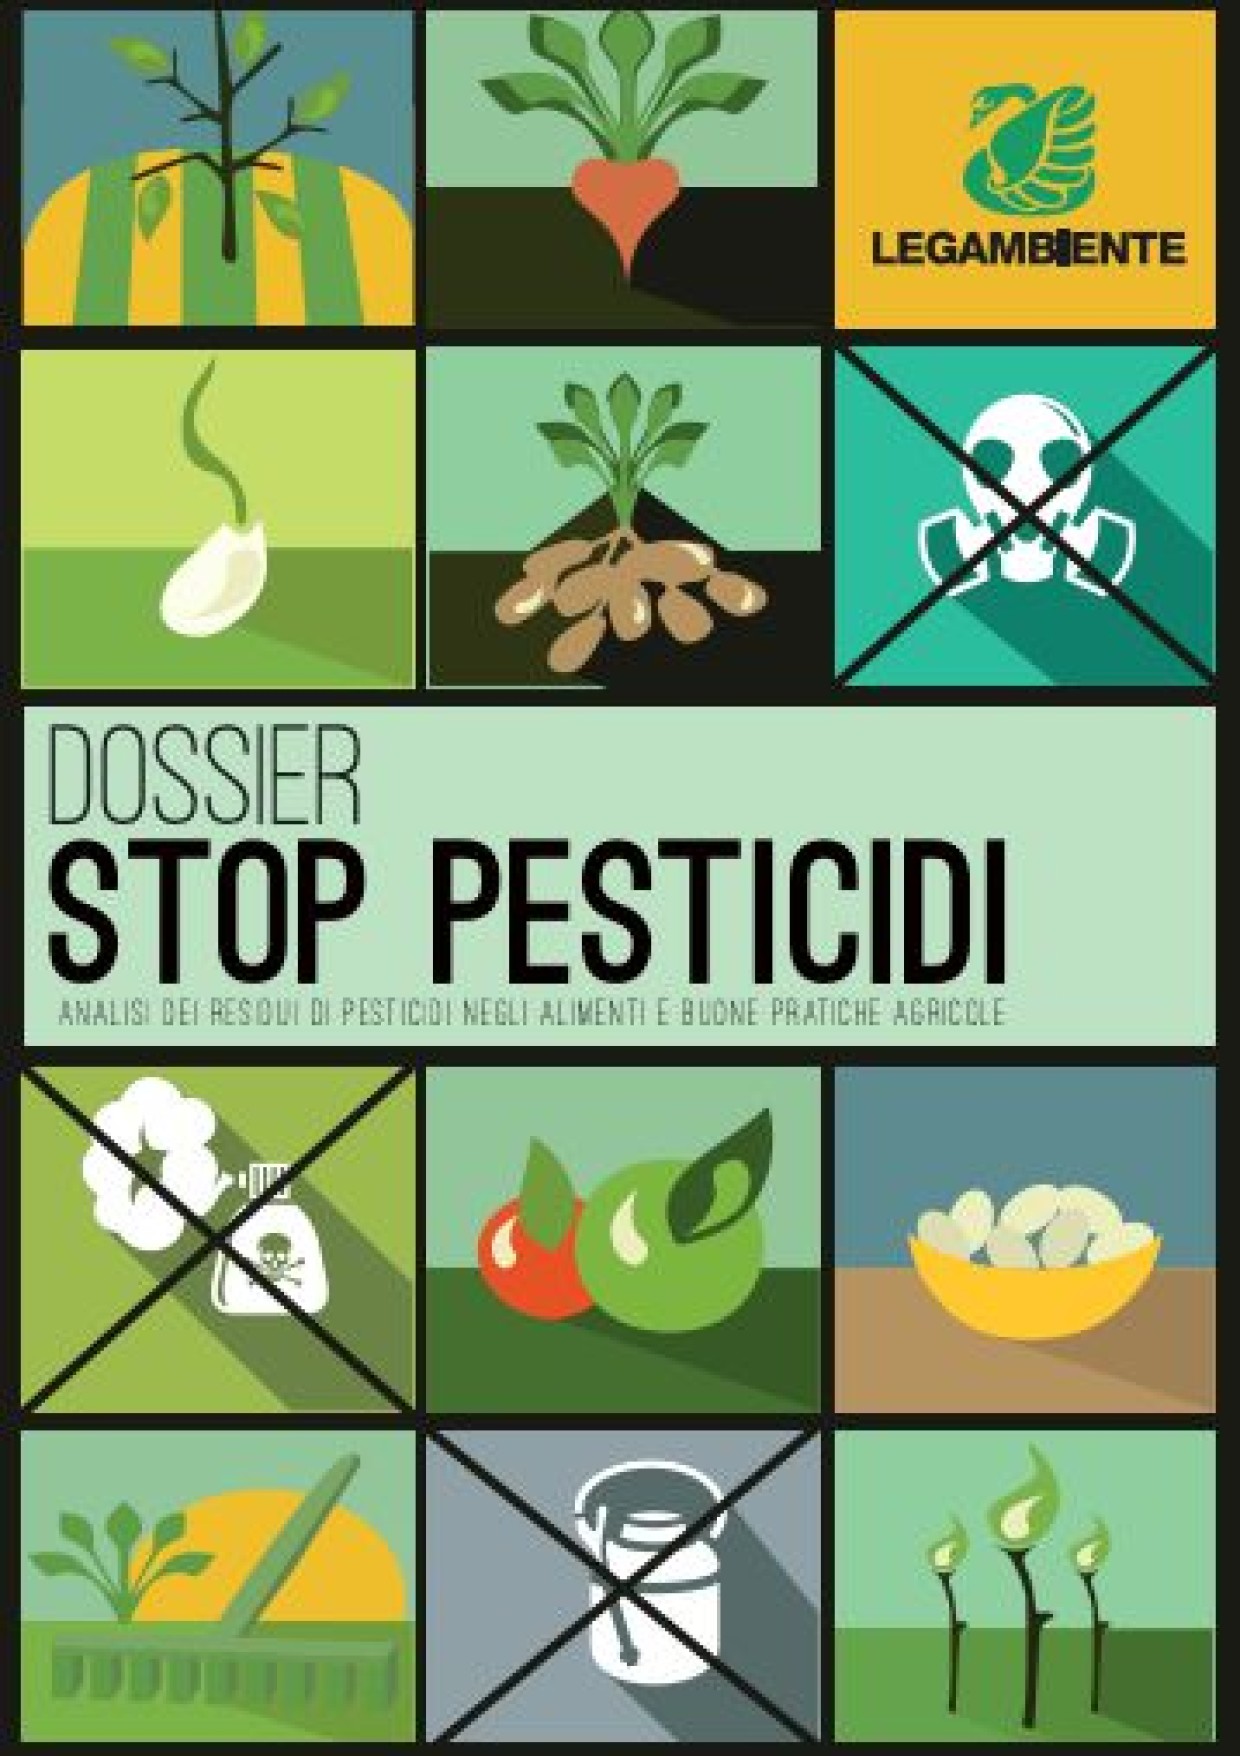 Dati allarmanti nel dossier di Legambiente sui residui dei pesticidi nei prodotti agricoli